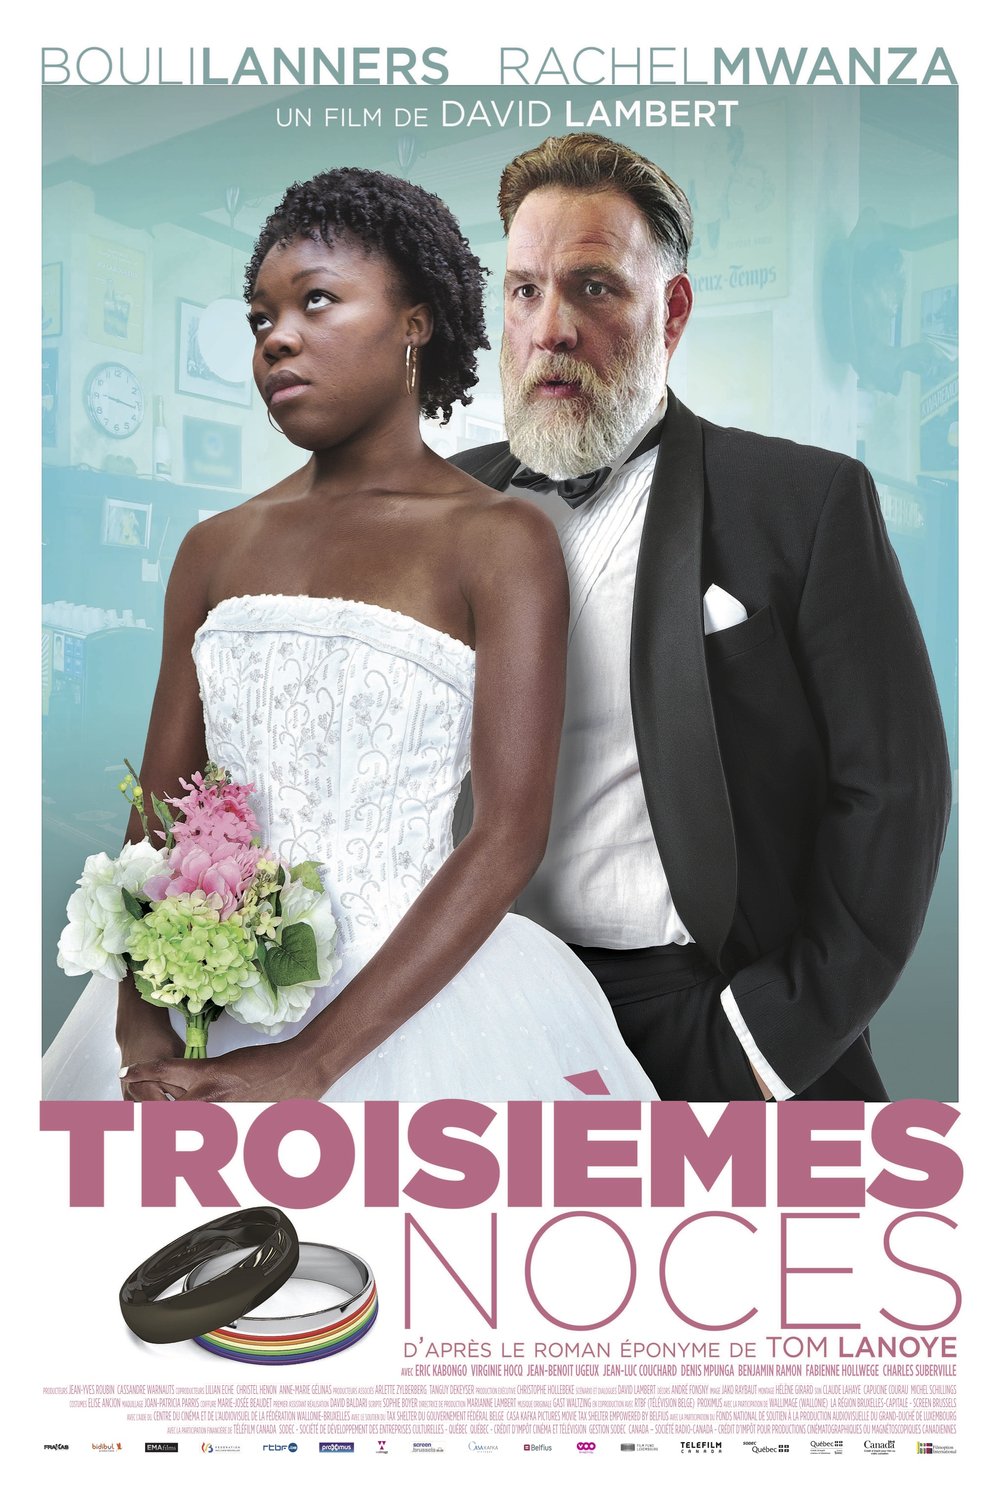 Poster of the movie Troisièmes noces